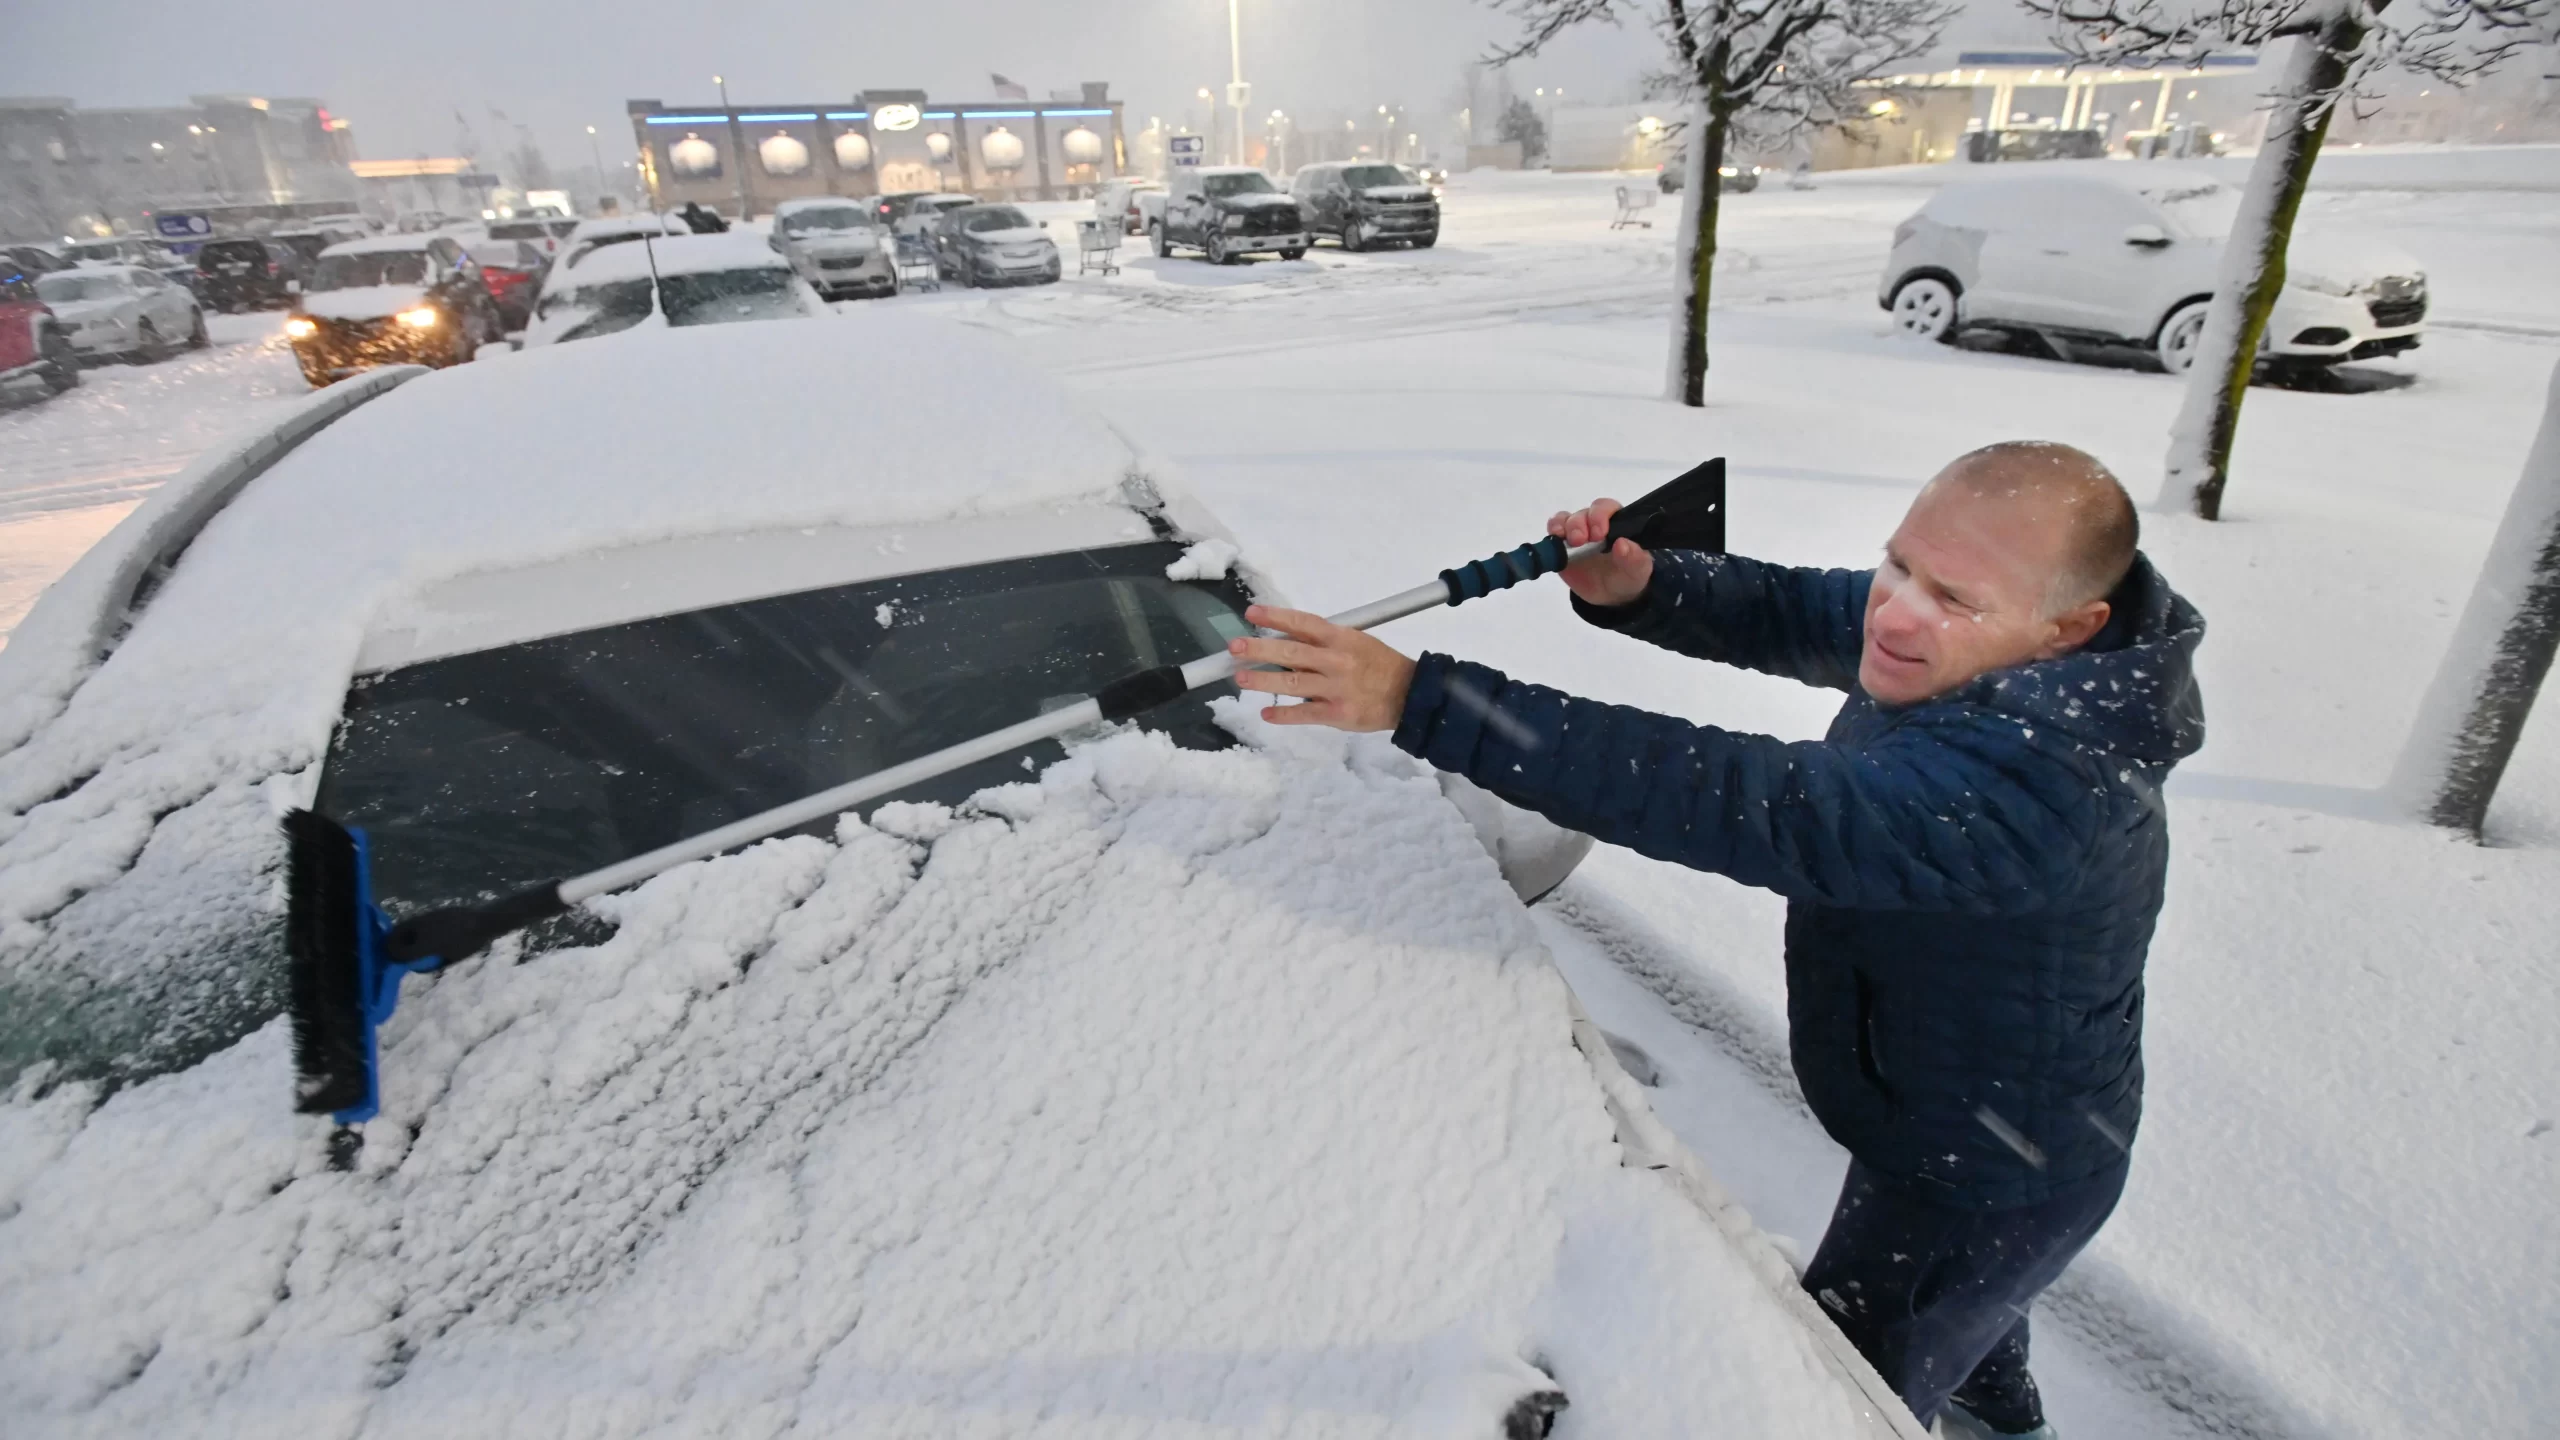 Kā Mičiganas ziemas vētra izgāza sniegu visā štatā